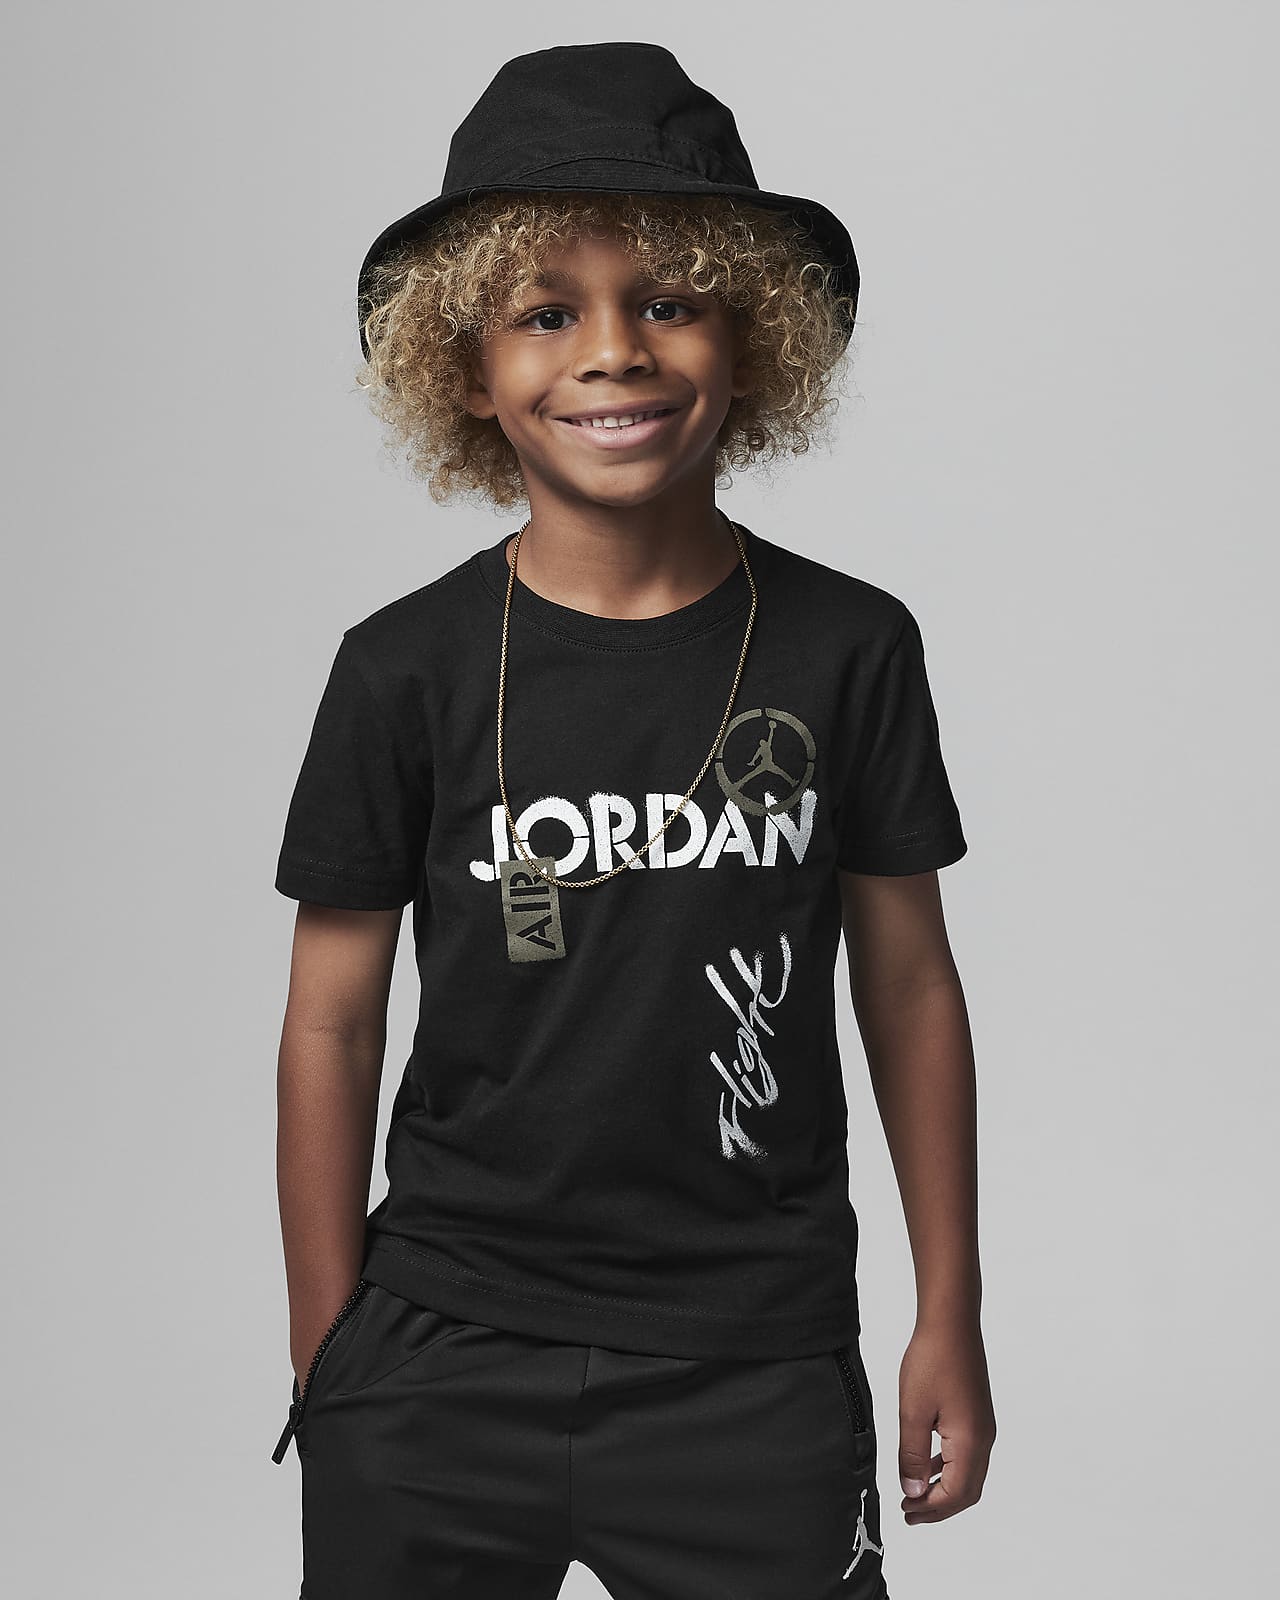 Playera para niños talla pequeña Jordan Jumpman